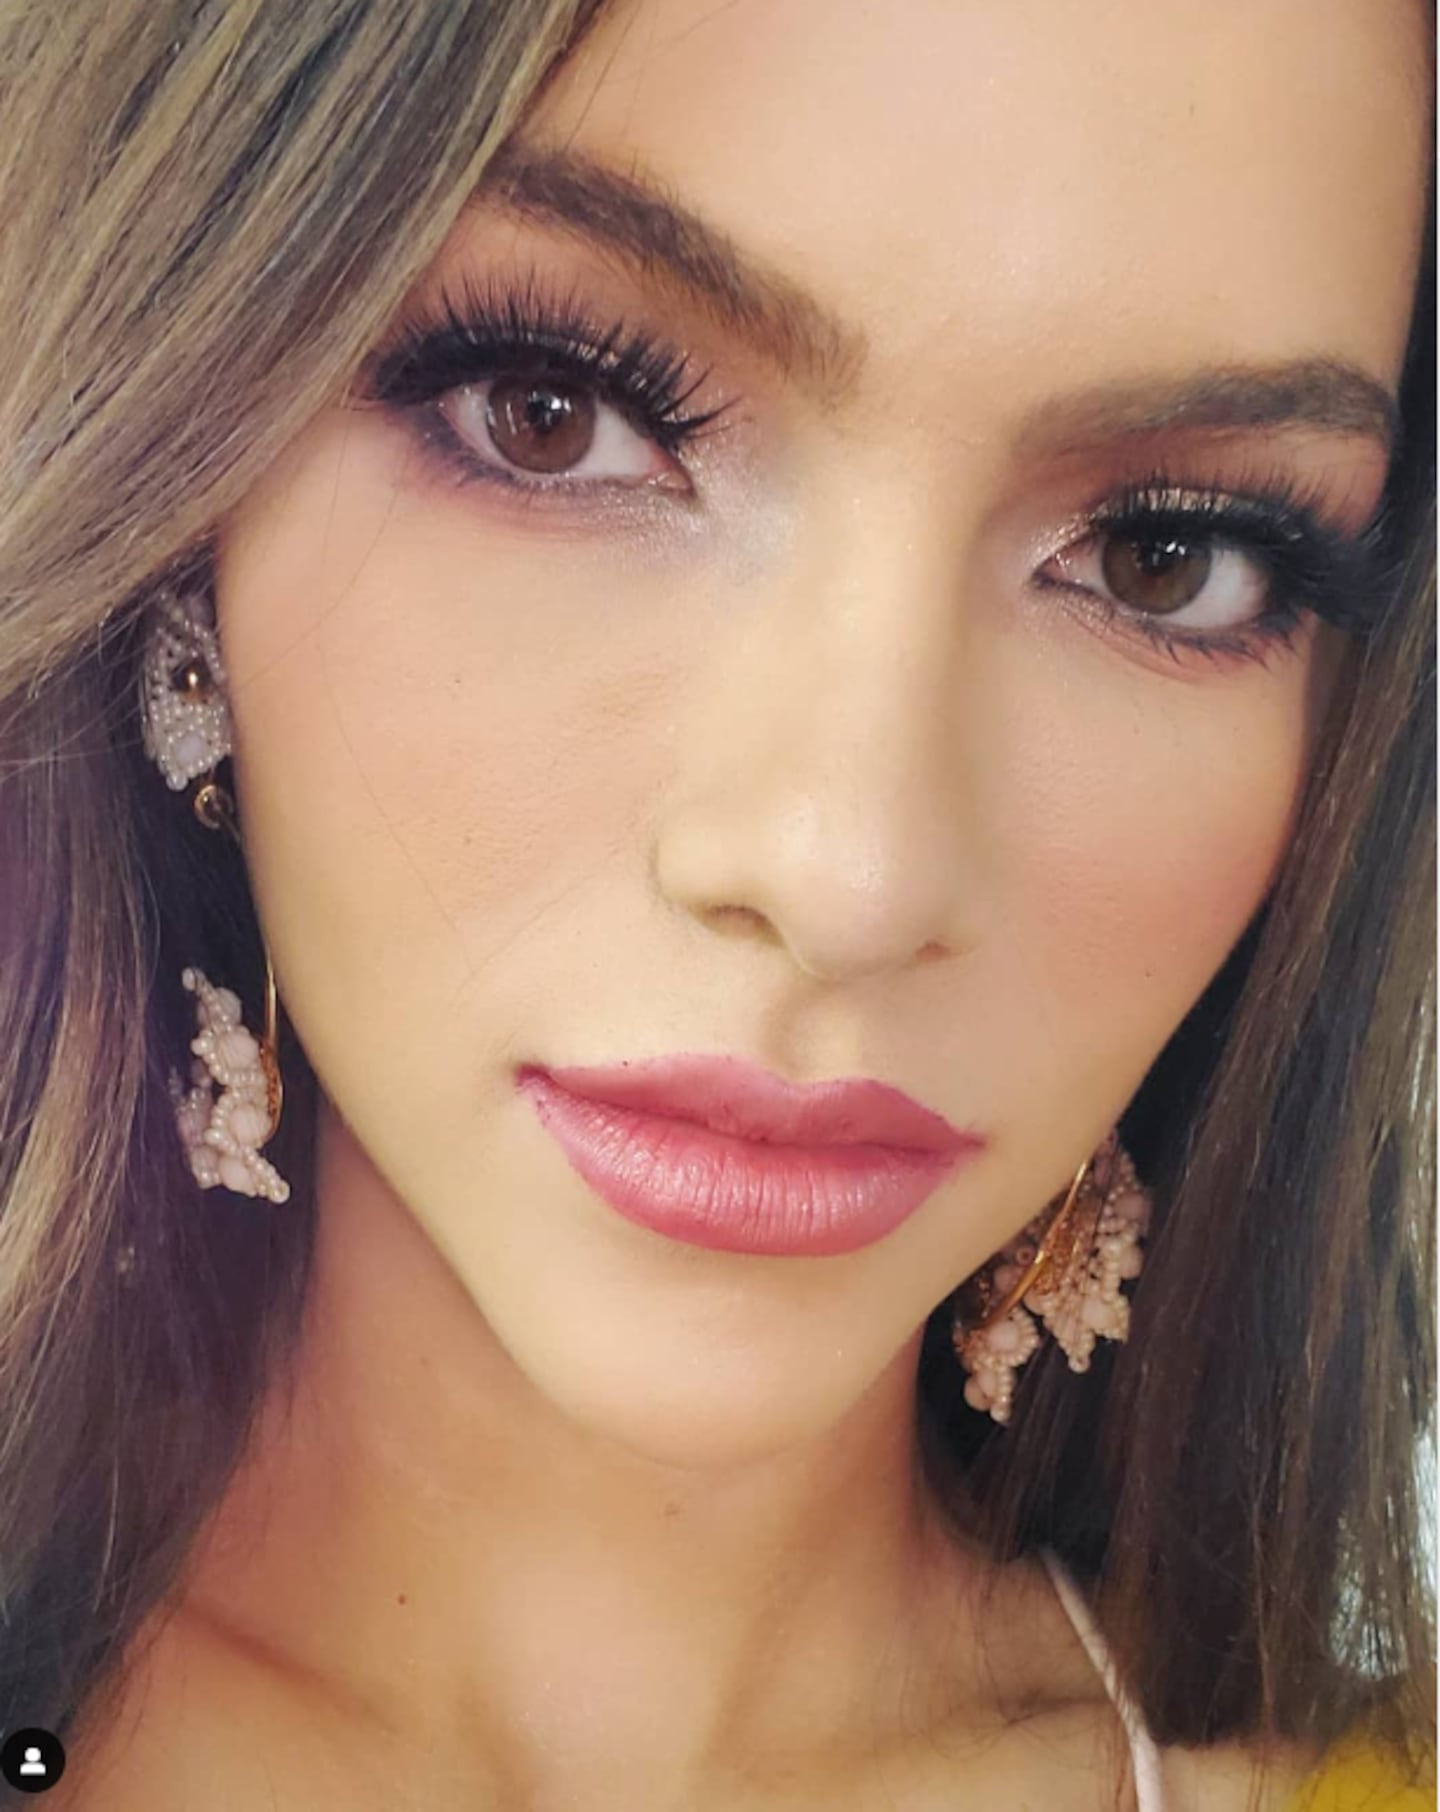 Miss Universo Ecuador Mara Topic: Mi novio terminó conmigo cuatro días antes de la concentración, el apoyo terapéutico es fundamental Jy53saf